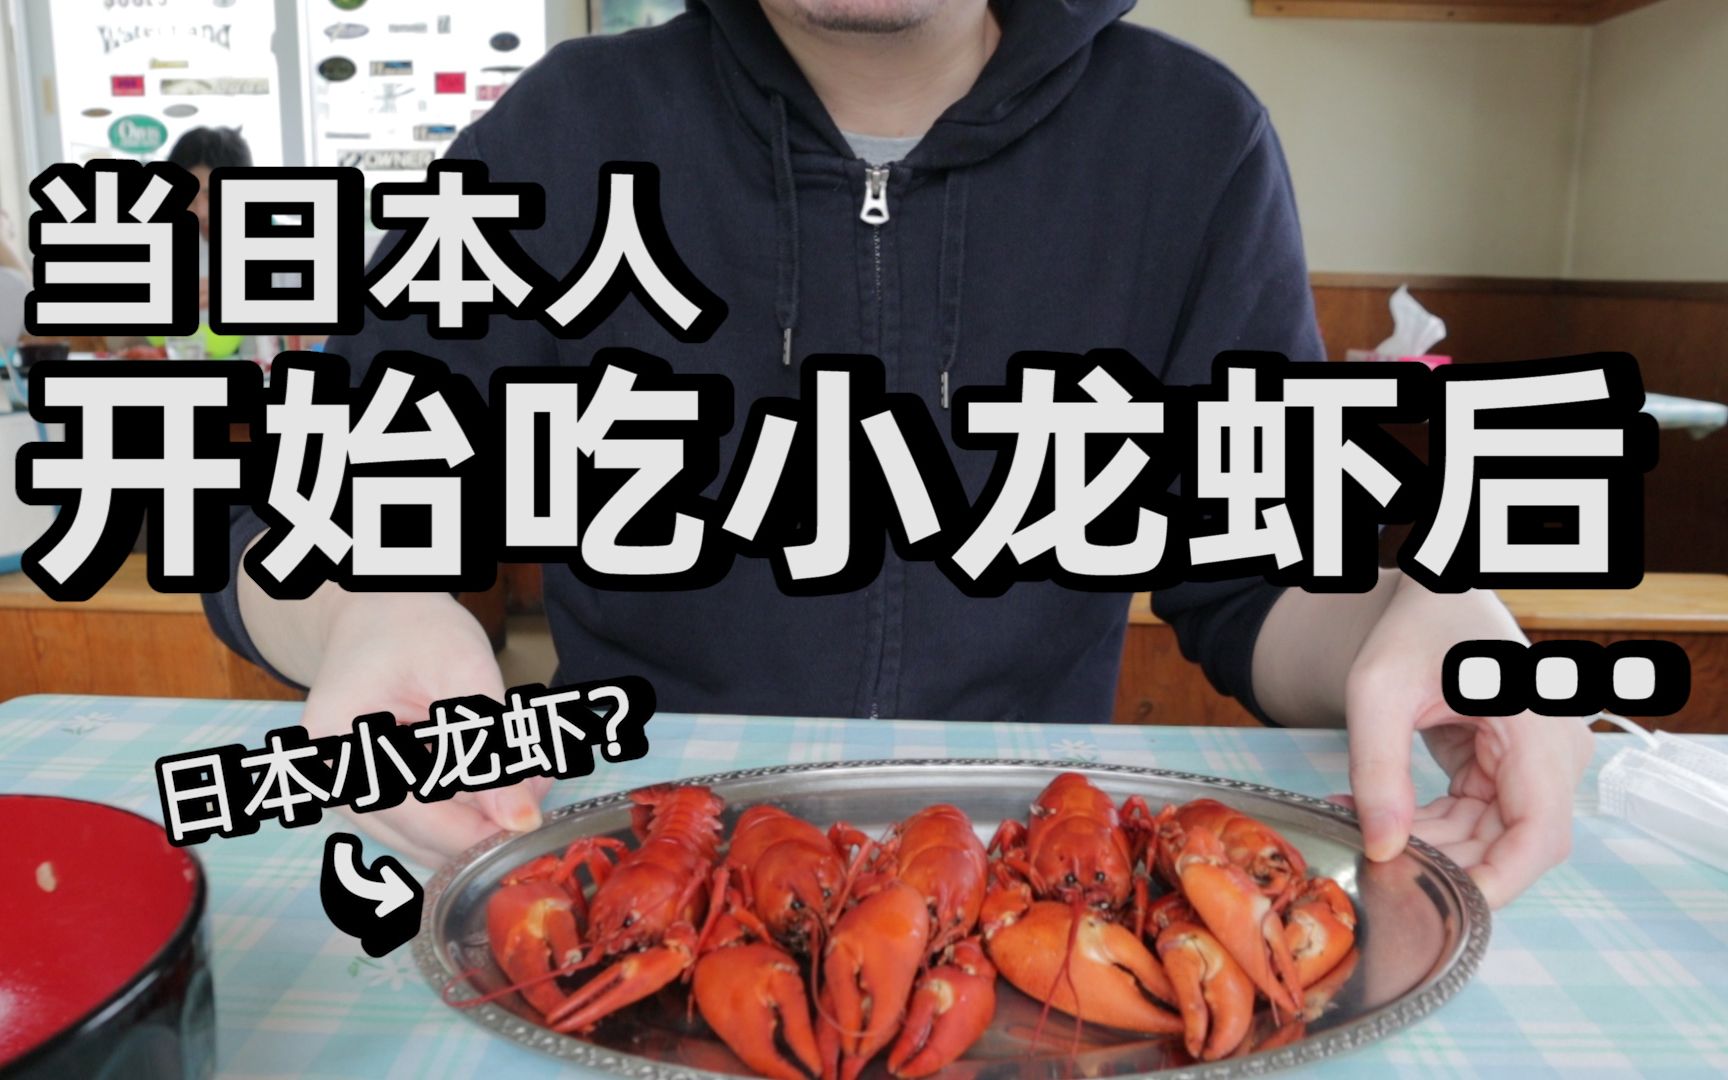 当日本人开始吃小龙虾后。。中国男子实测日本小龙虾